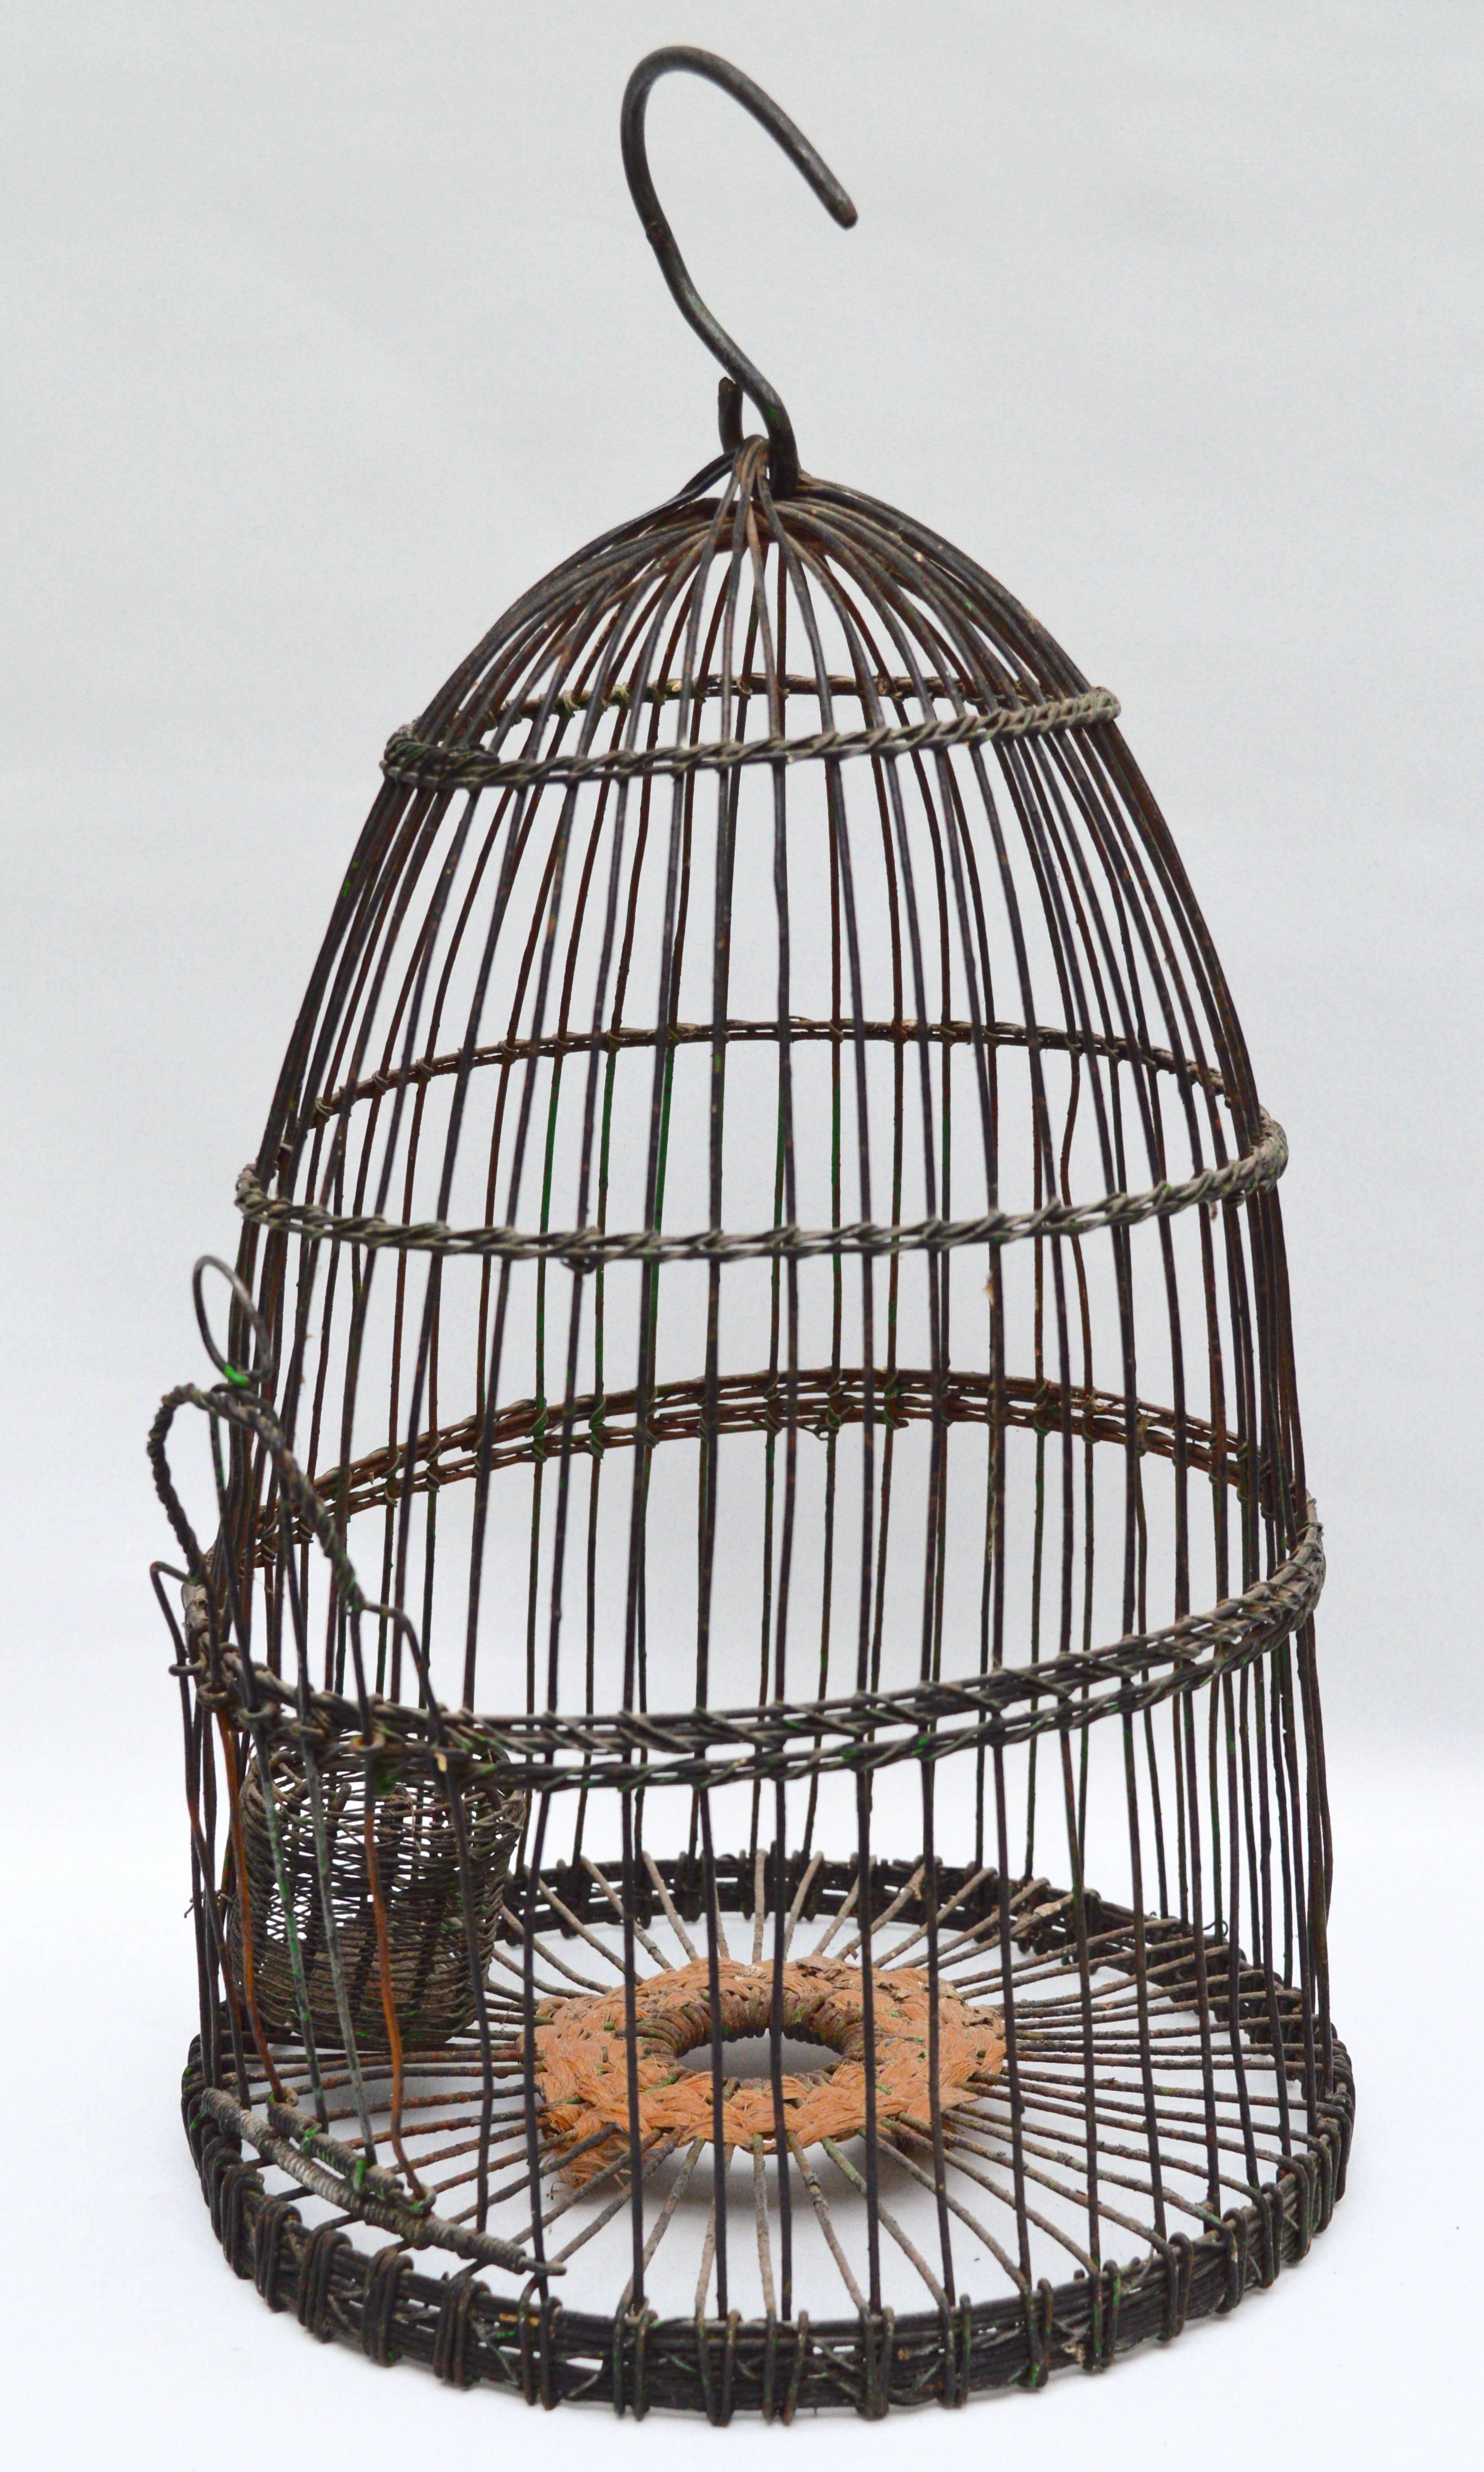 Vintage wire-work Tunisian bird cage.